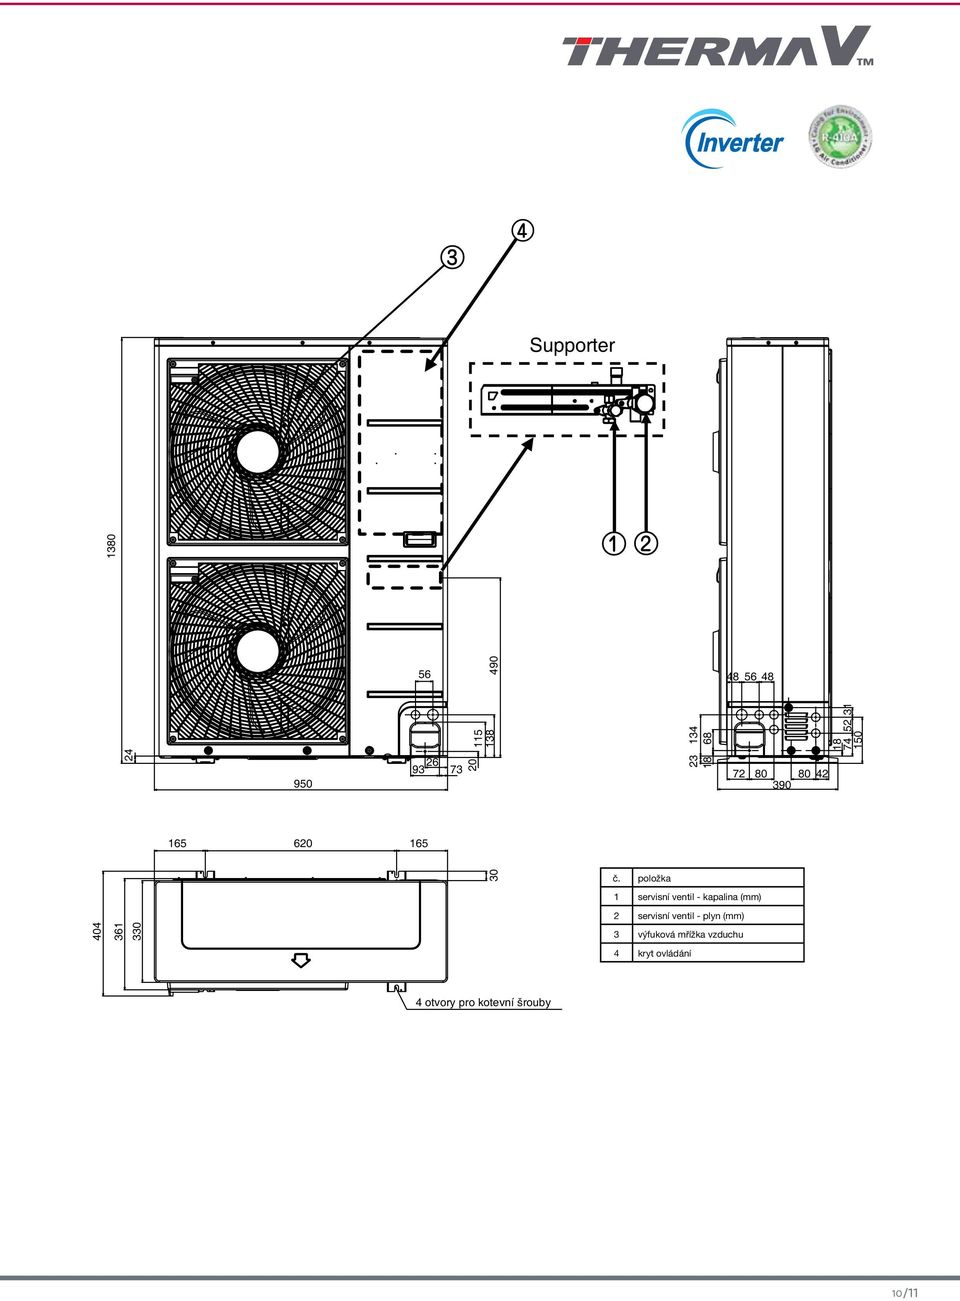 položka 1 servisní ventil - kapalina () 2 servisní ventil - plyn ()